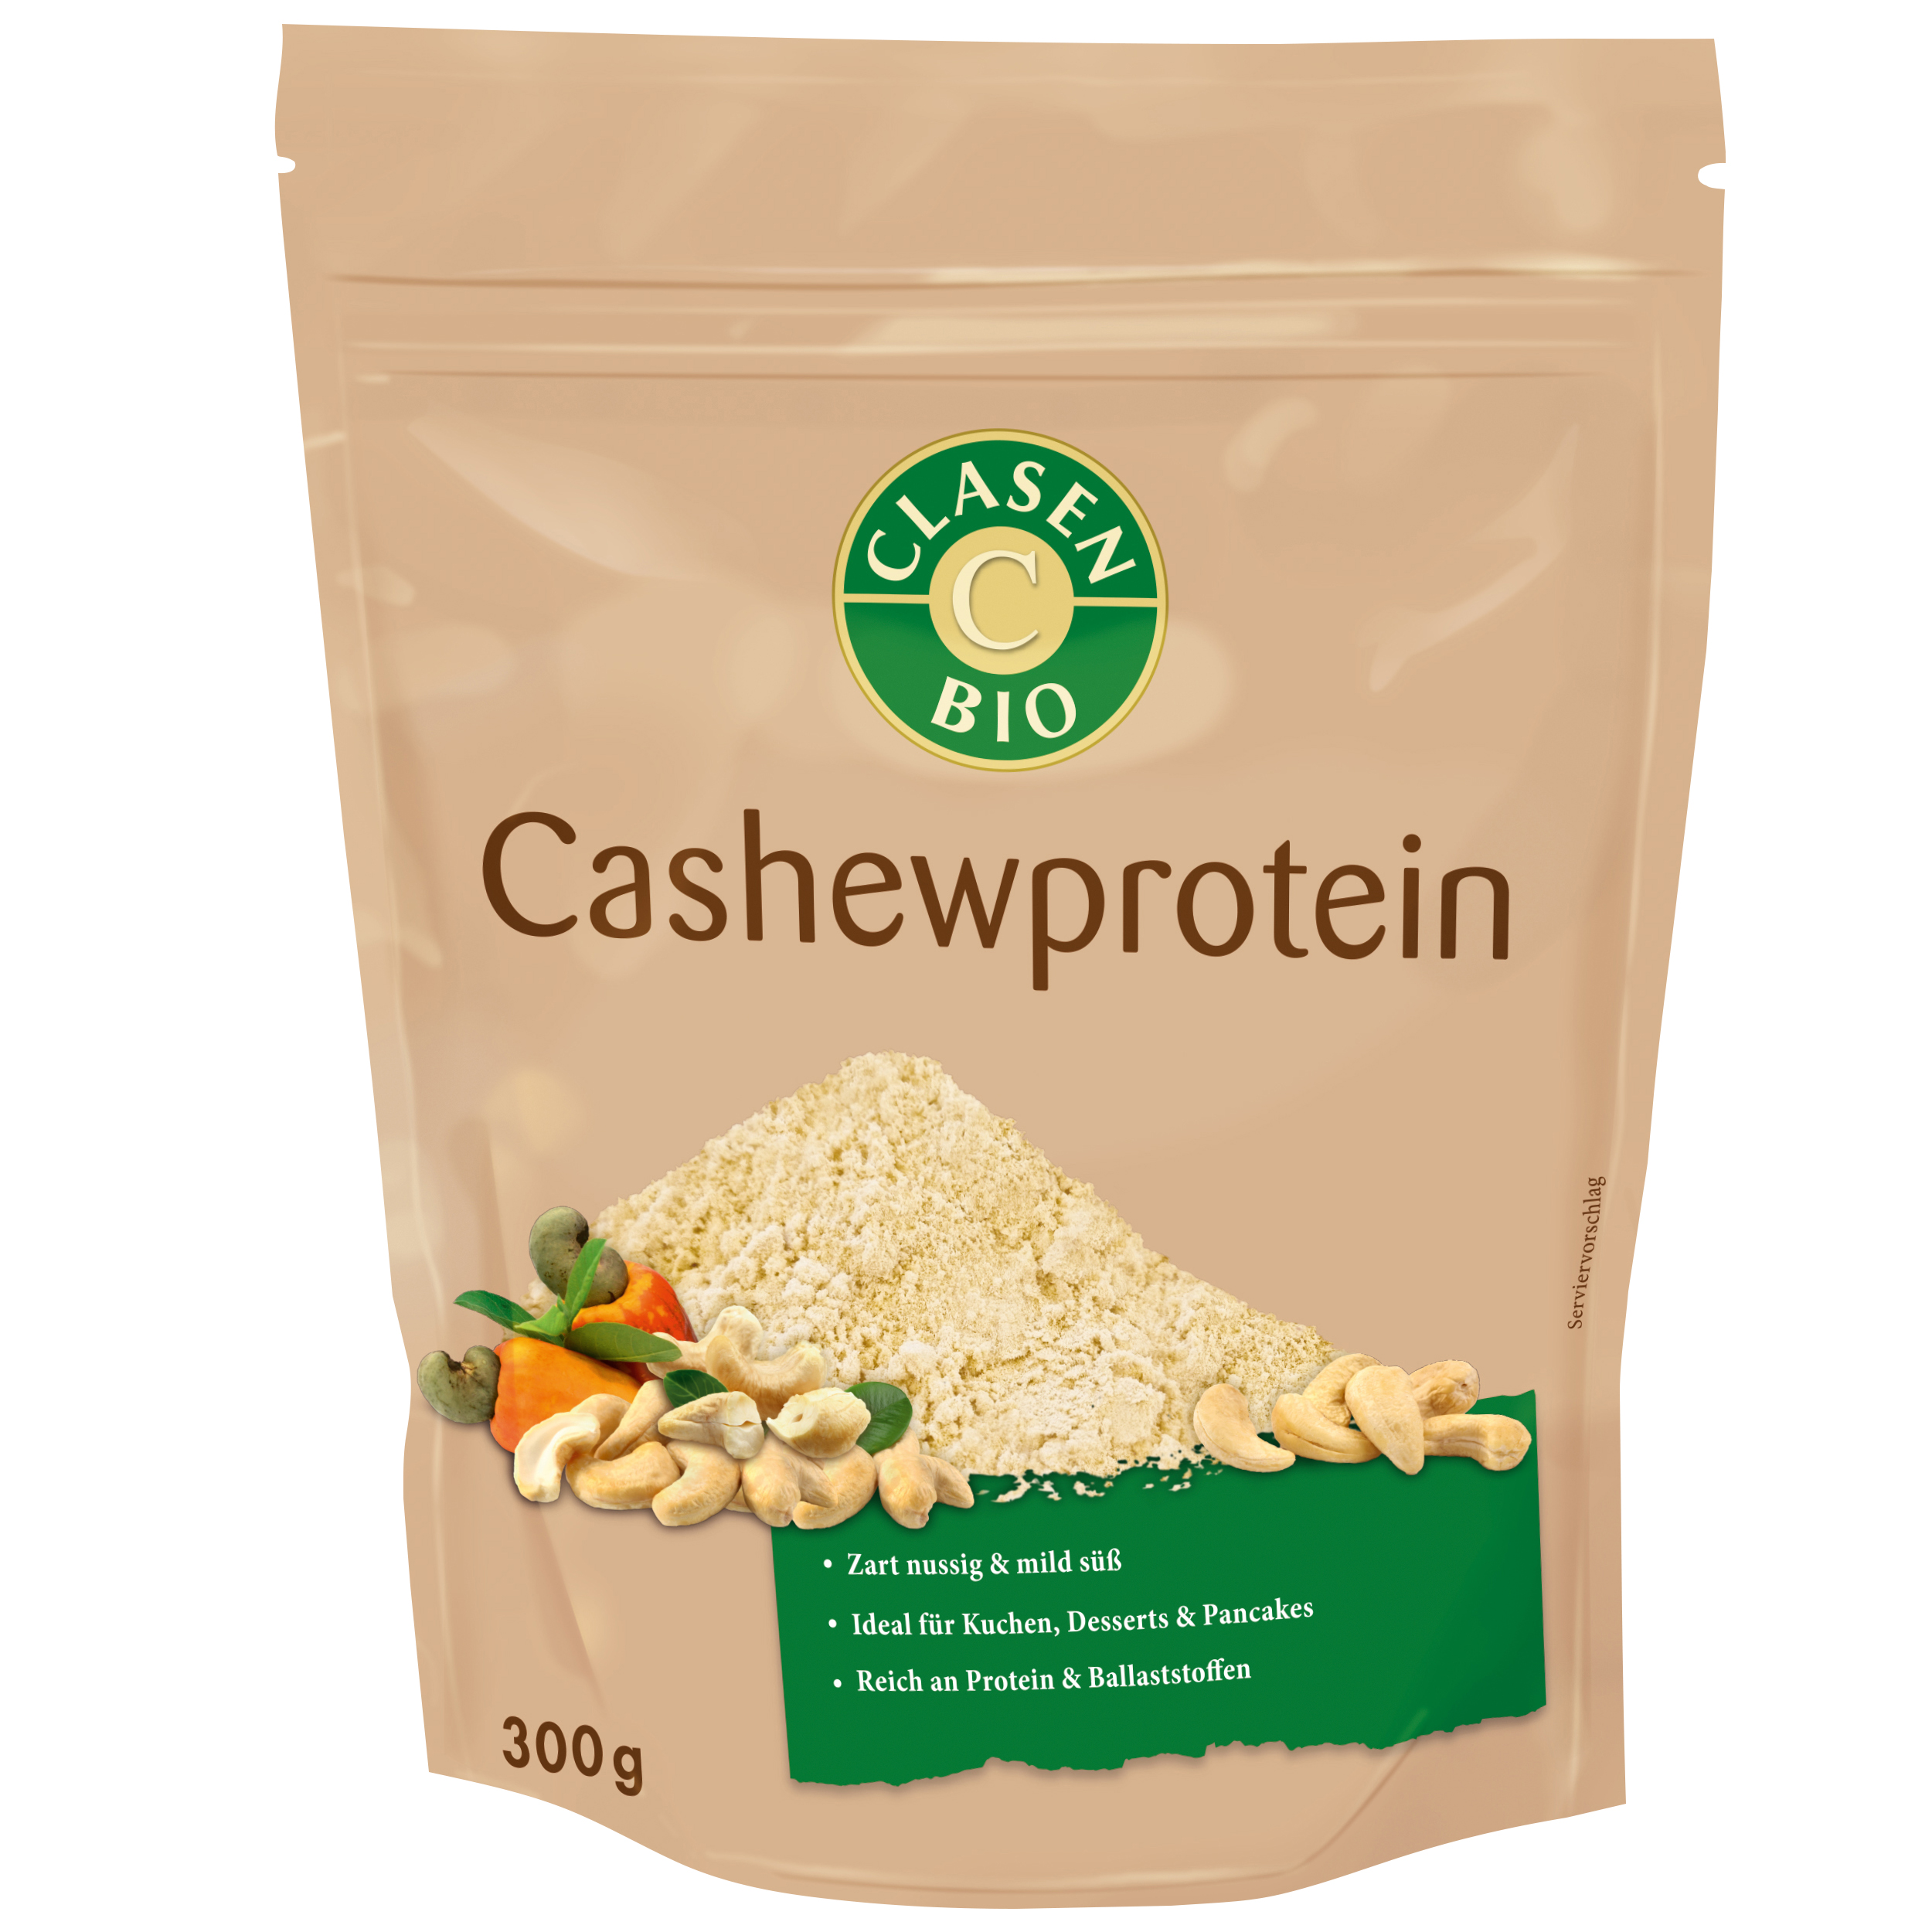 Cashewprotein